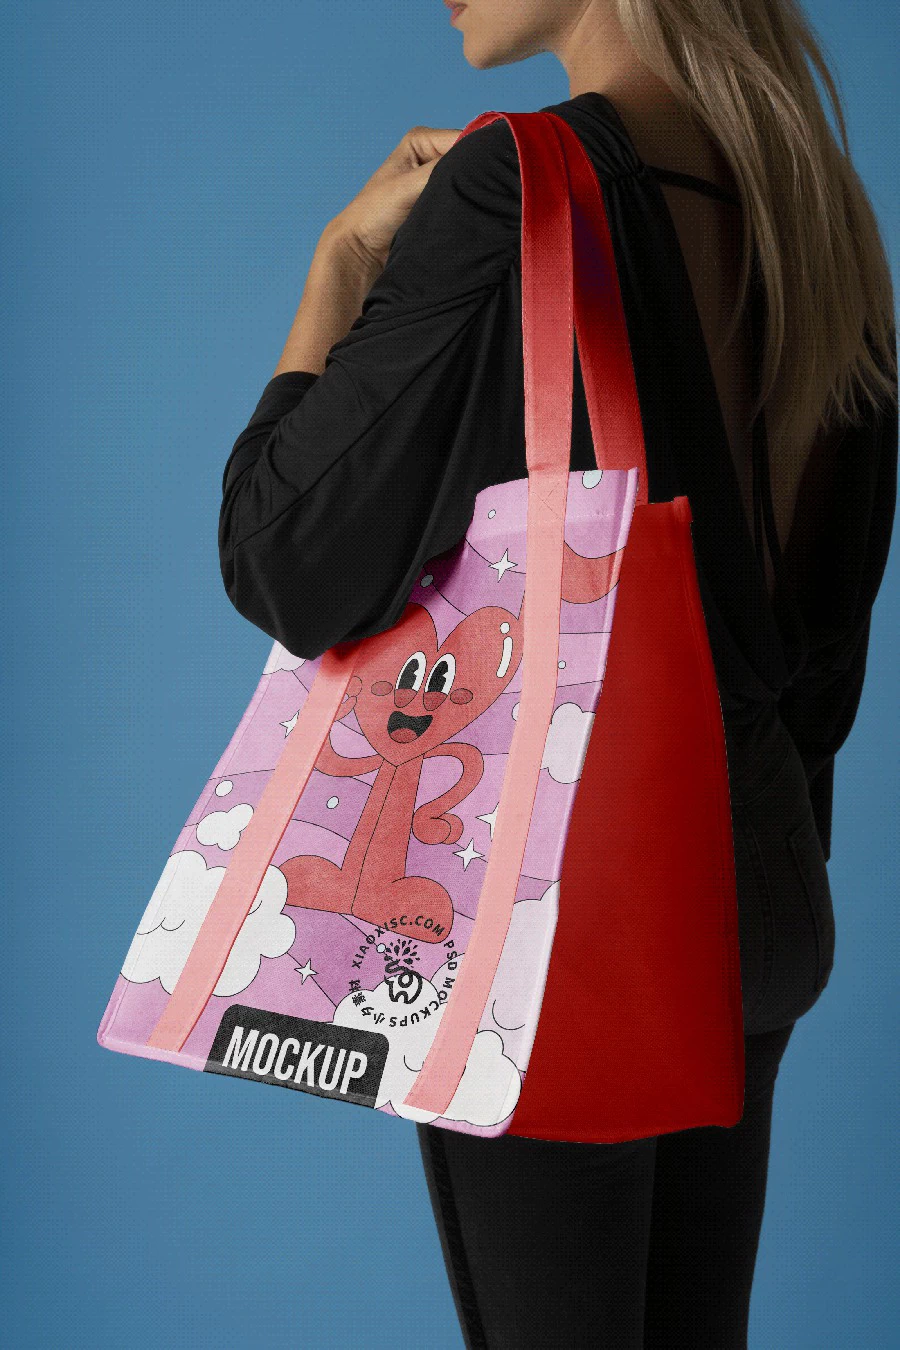 品牌环保塑料手提袋编织袋购物袋vi多角度展示智能样机PSD素材【006】